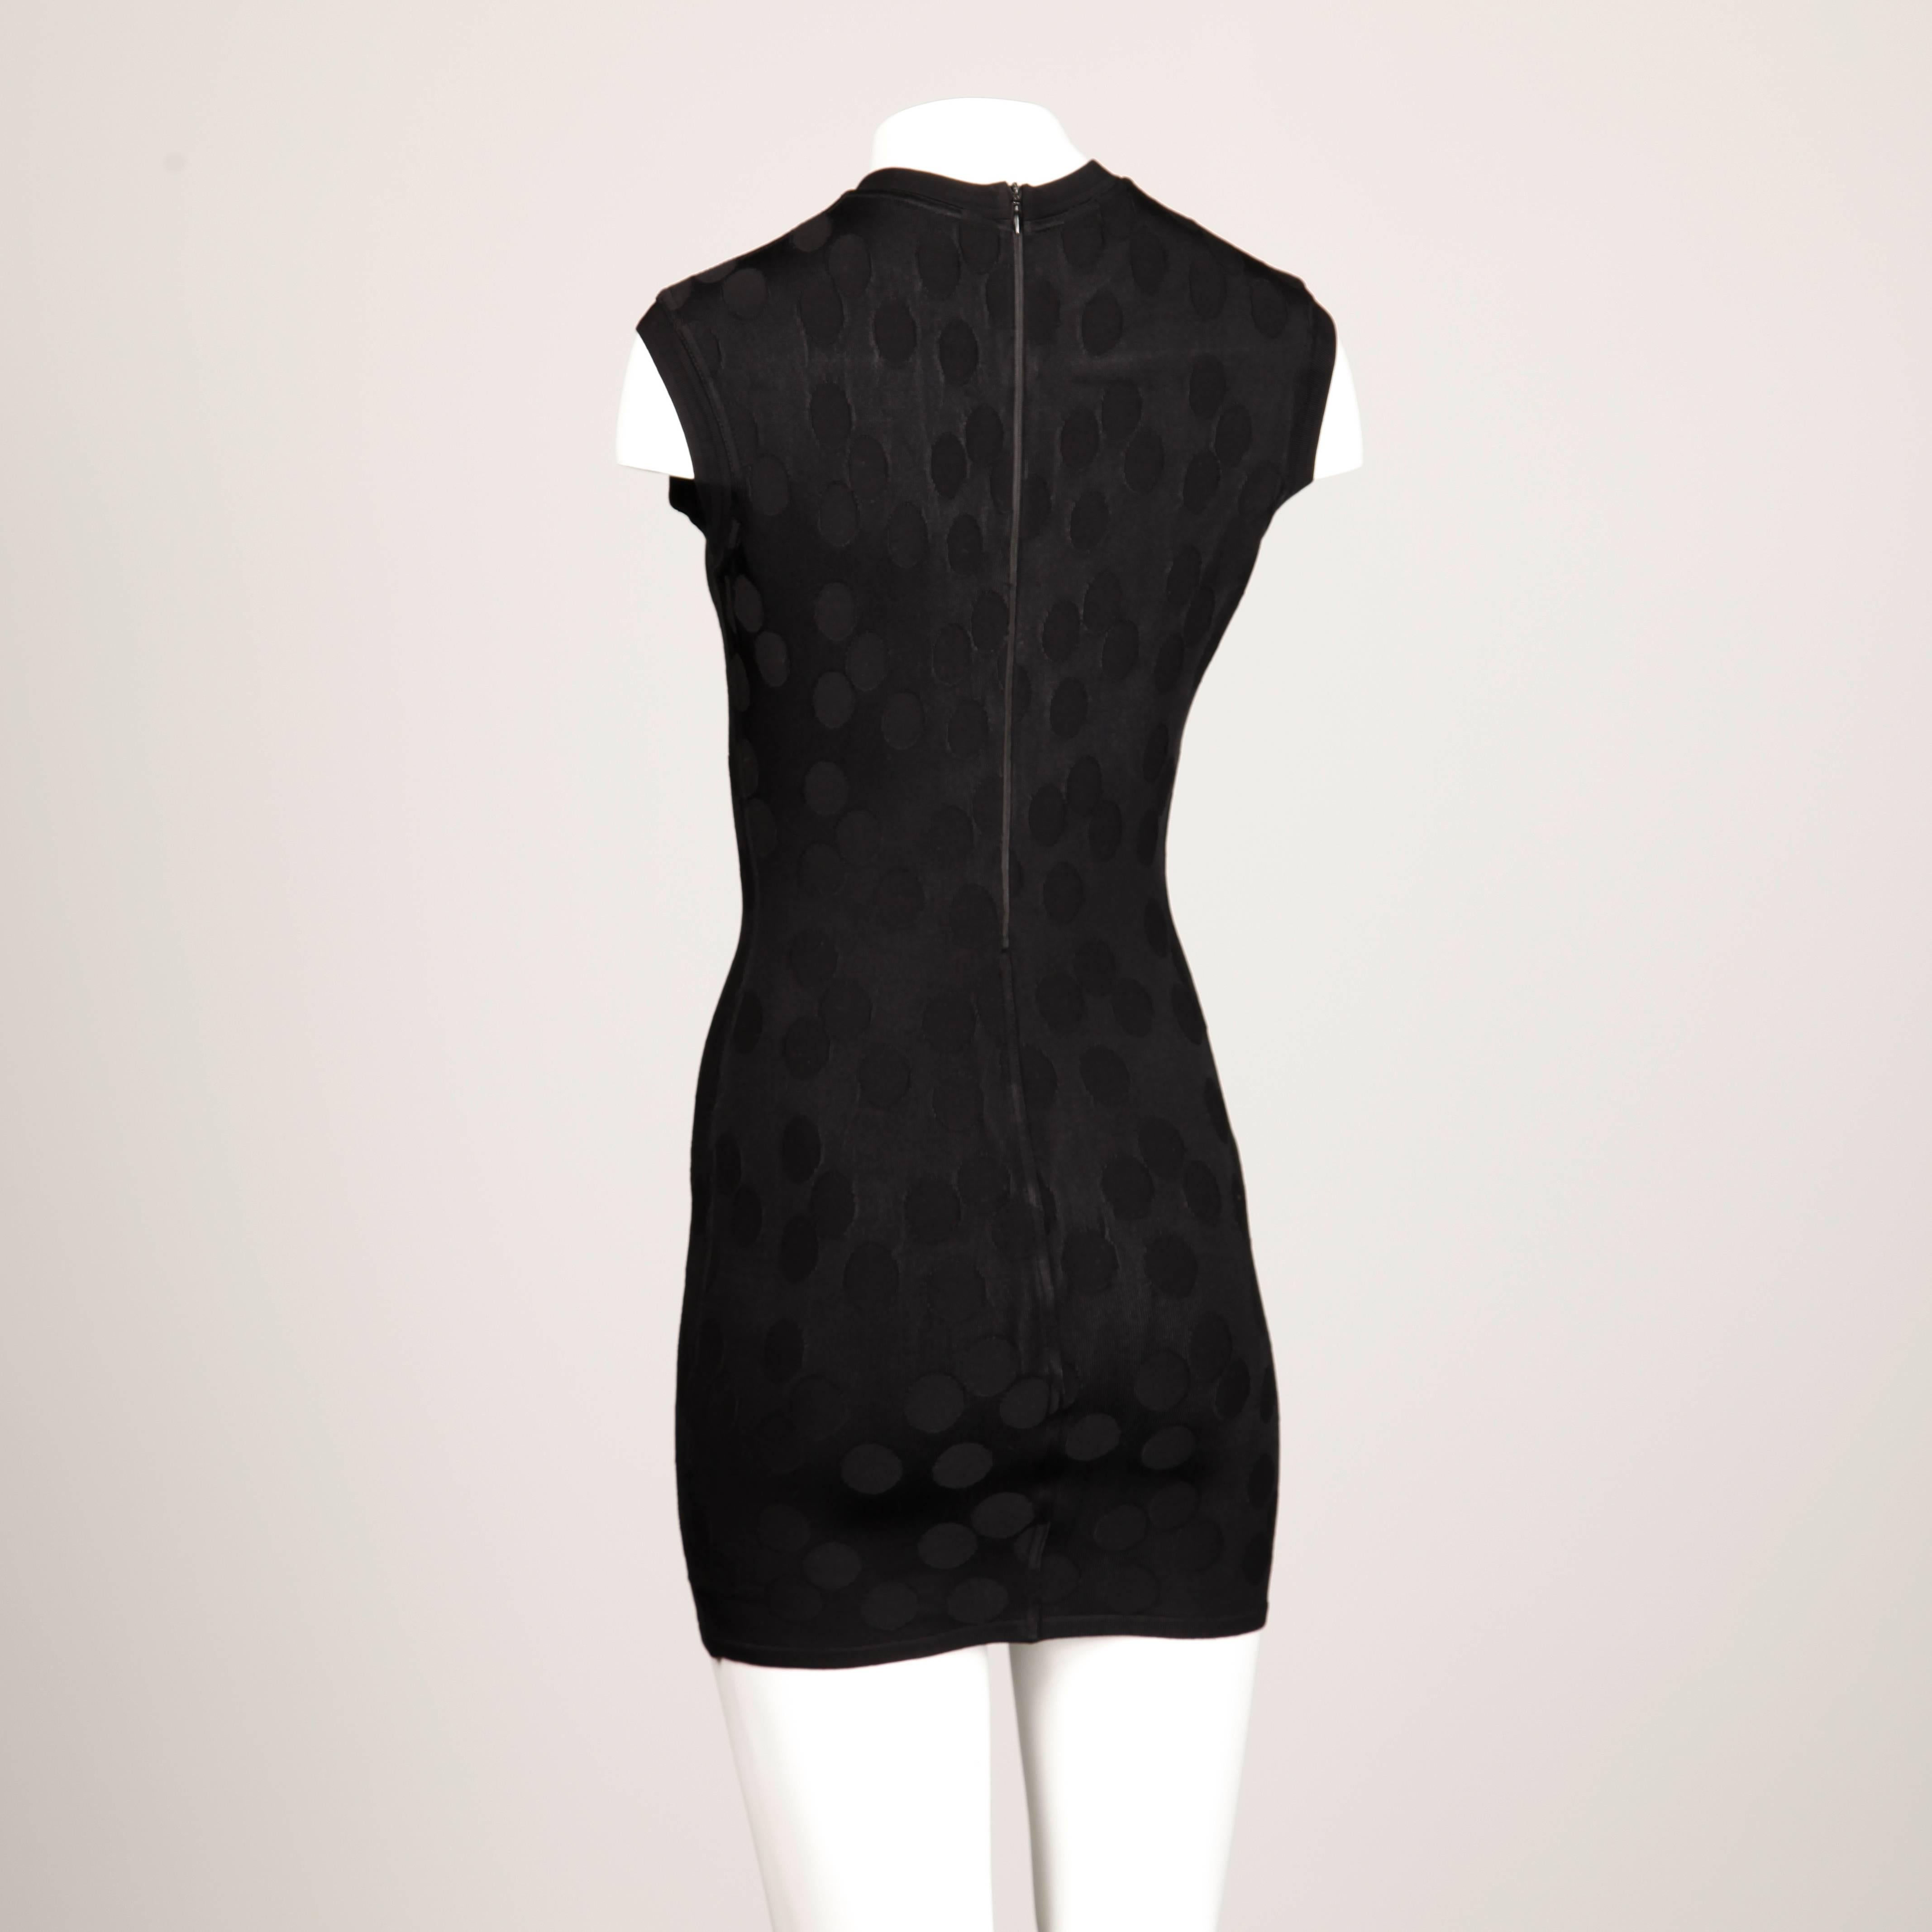 Women's Alaia Vintage 1990s Black Polka Dot Dress